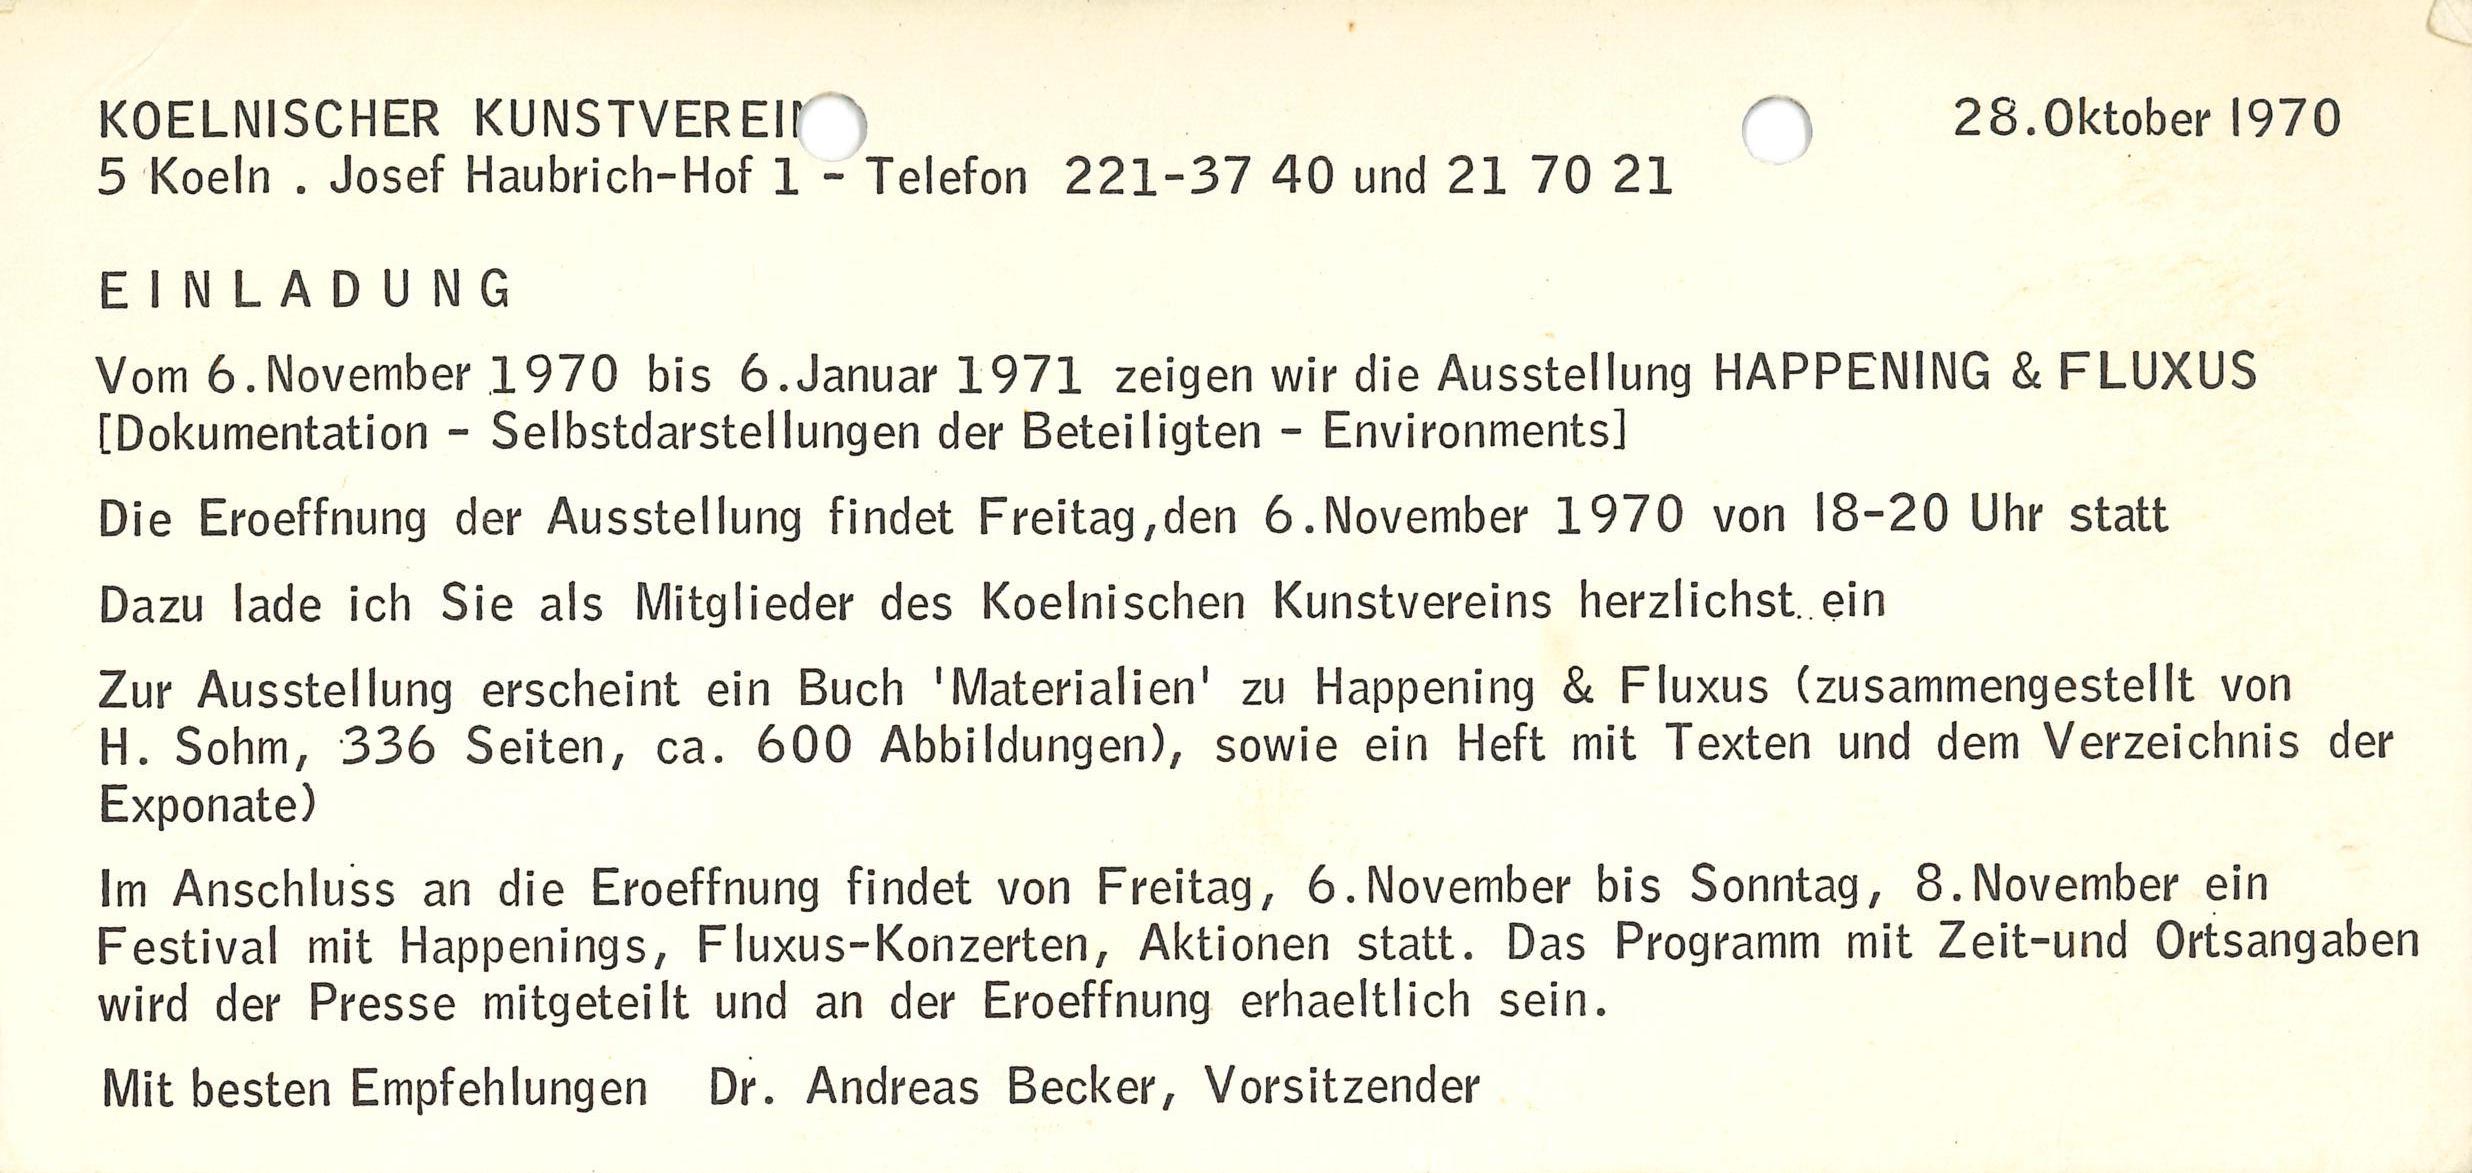 FLUXUS & HAPPENING,
Kölnischer Kunstverein
1970 (invitation); Archiv der Avantgarden, Staatliche Kunstsammlungen Dresden 